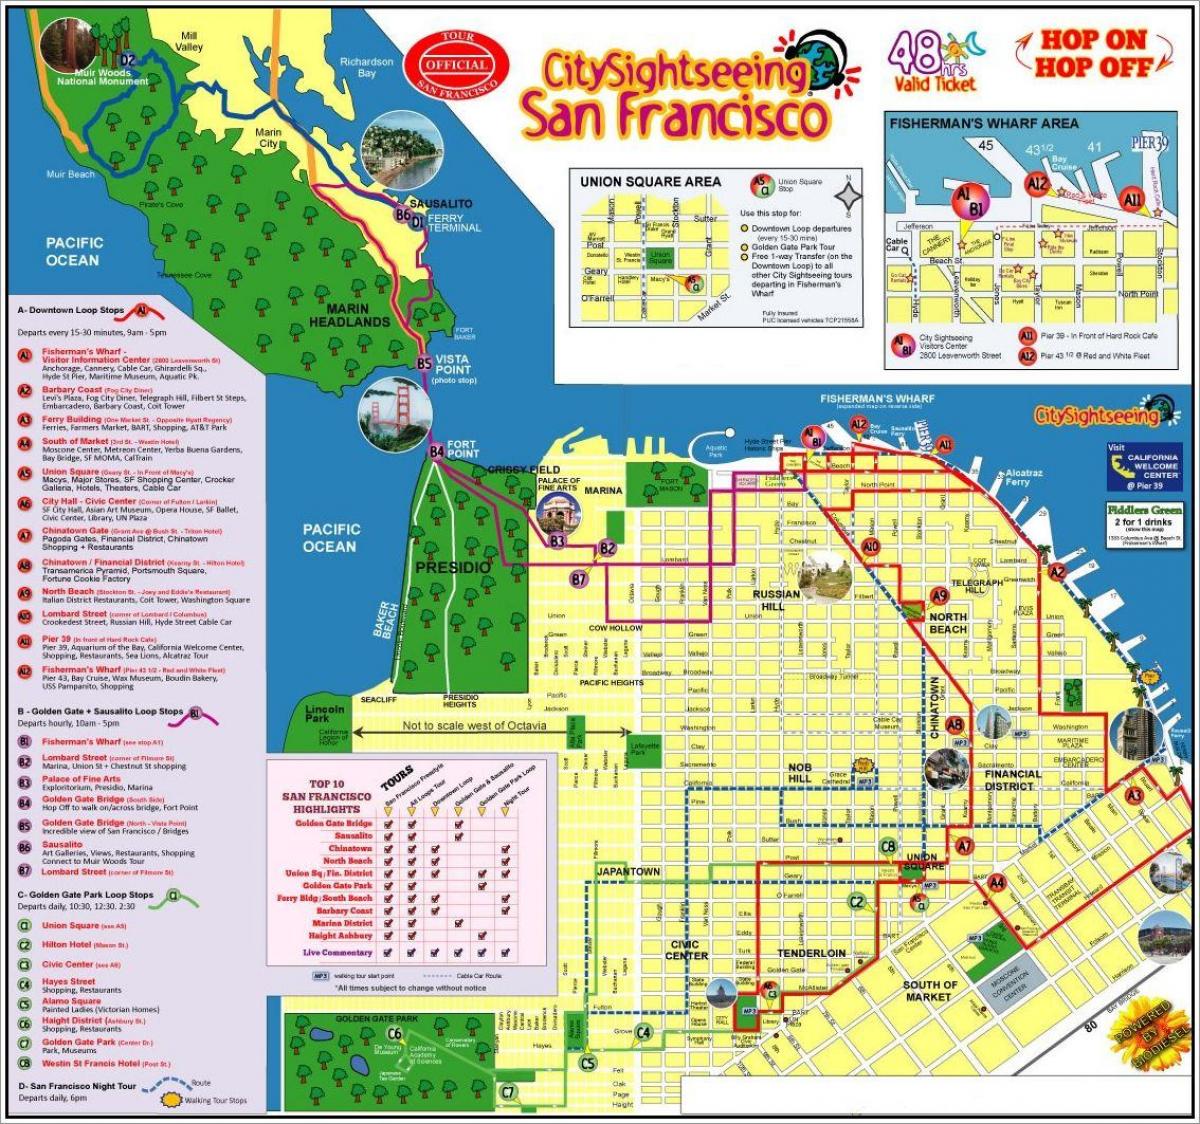 સાન ફ્રાન્સિસ્કો હોપ પર હોપ બોલ બસ પ્રવાસ નકશો